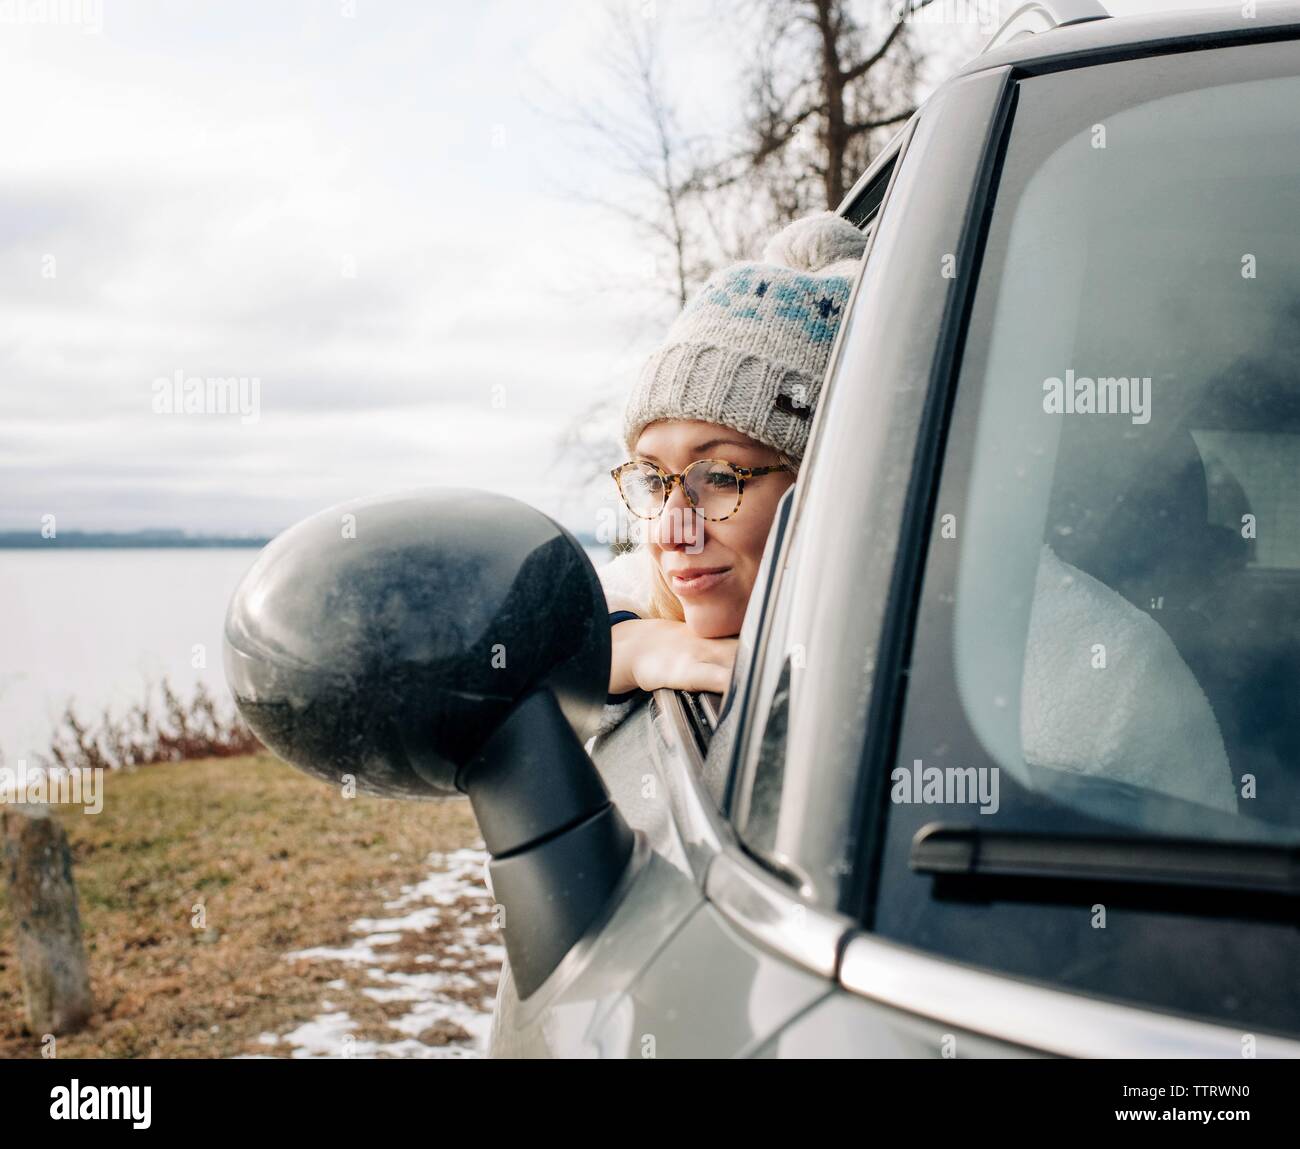 Ritratto di donna bionda con gli occhiali guardando fuori della finestra auto acqua Foto Stock